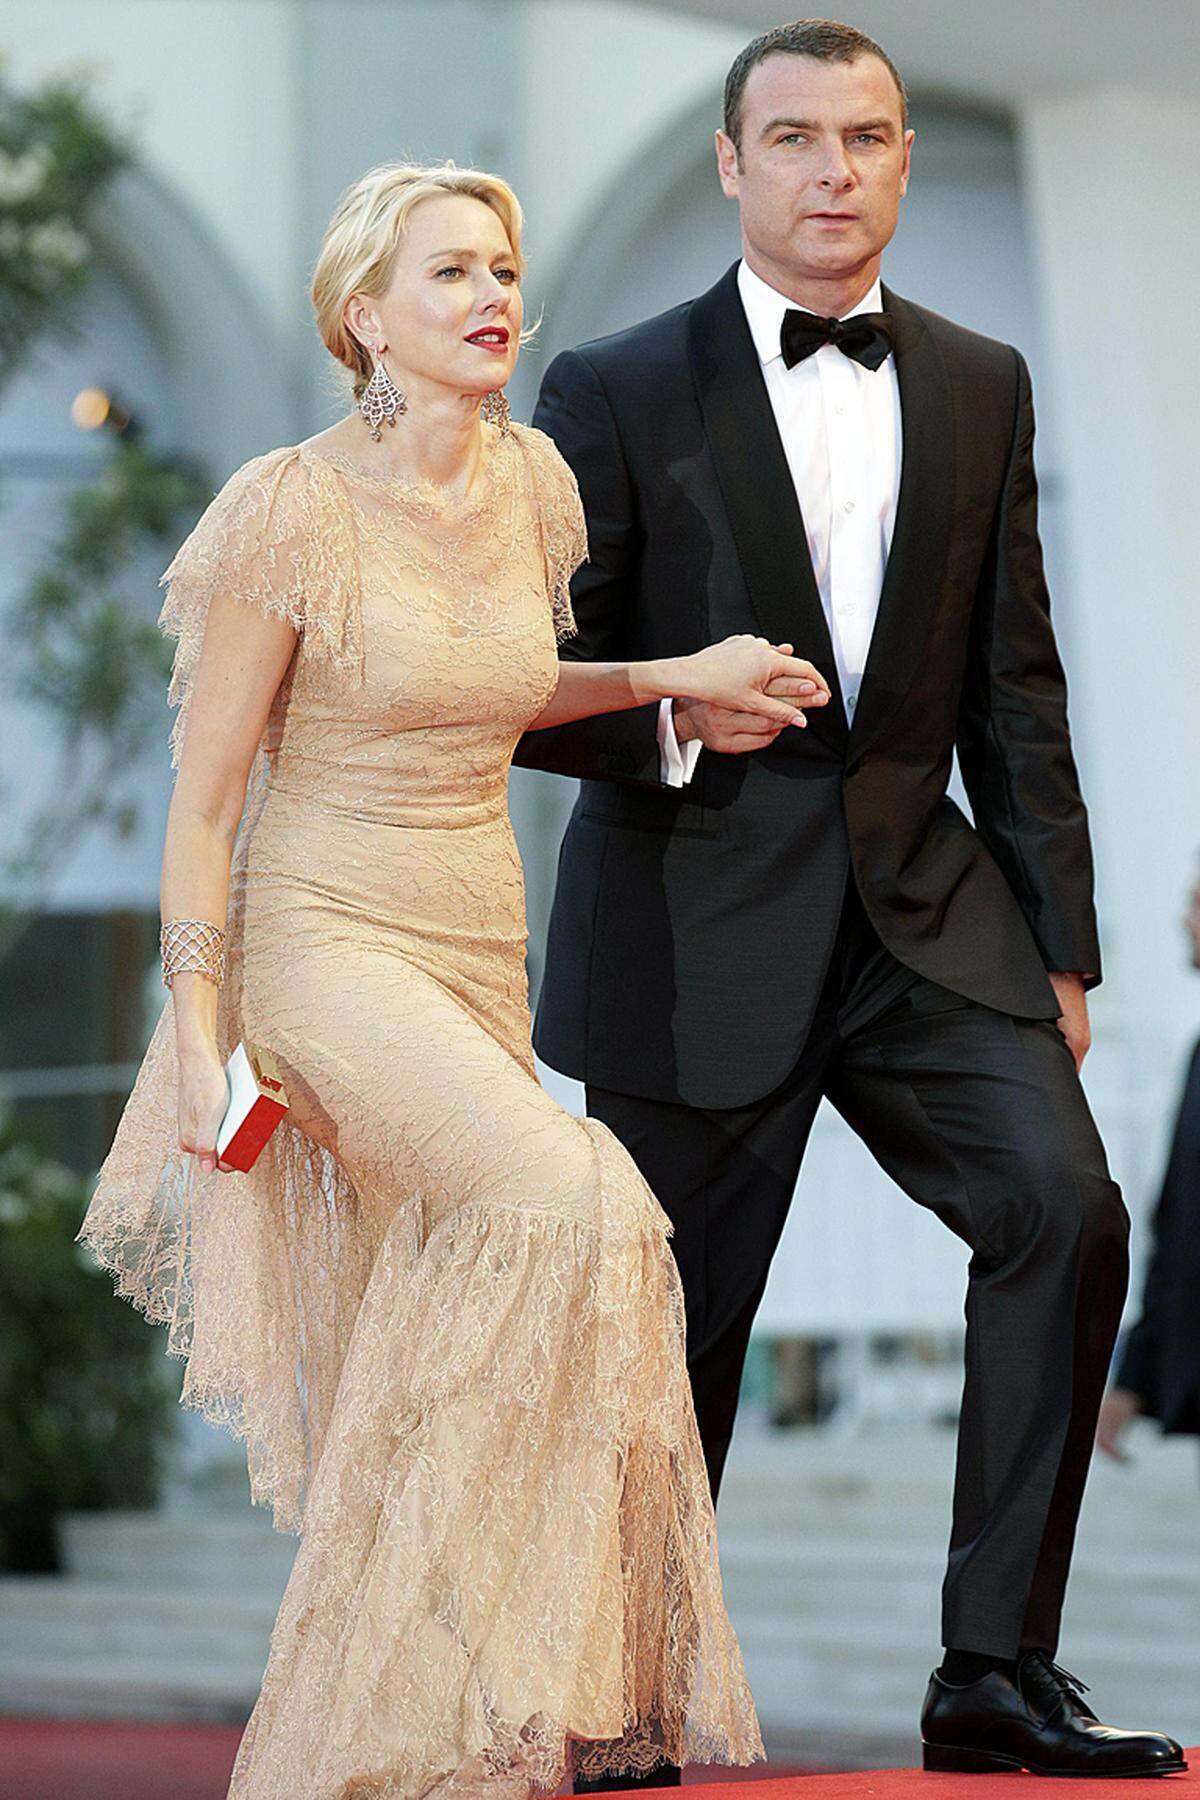 Die Hauptdarsteller des Eröffnungsfilms durften auf dem Red Carpet nicht fehlen: Liev Schreiber kam mit Ehefrau und Schauspielkollegin Naomi Watts.